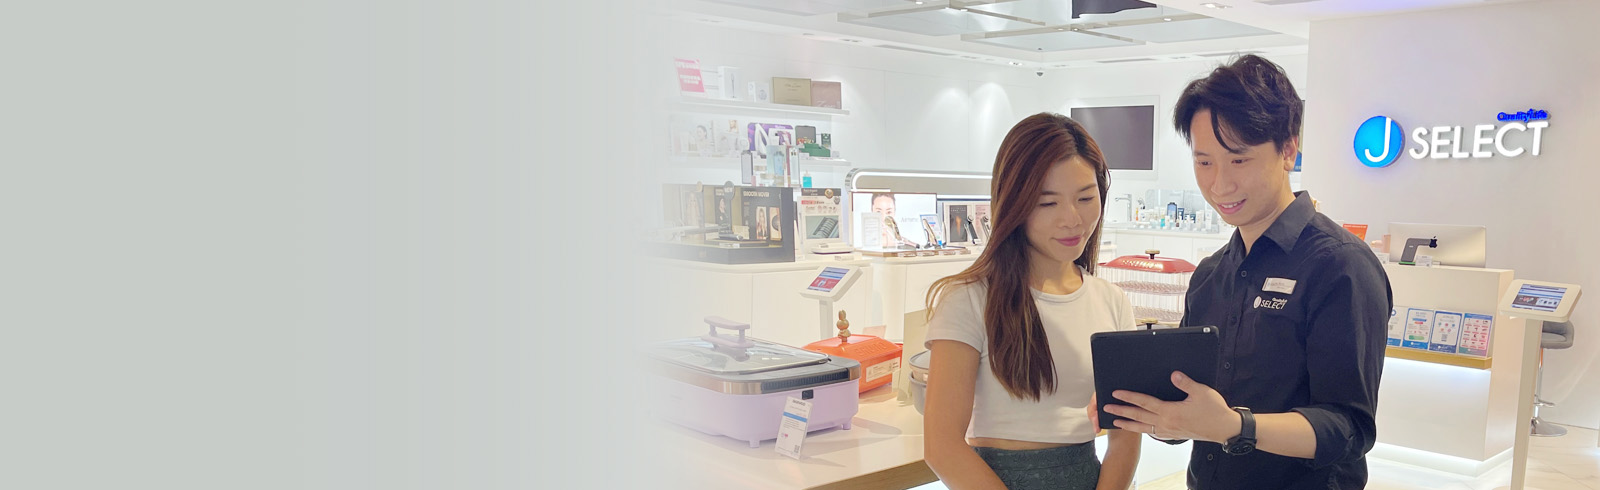 一名身穿黑色袖衫的營業員正在使用他手上的平板電腦在J Select店舖向女士推銷產品